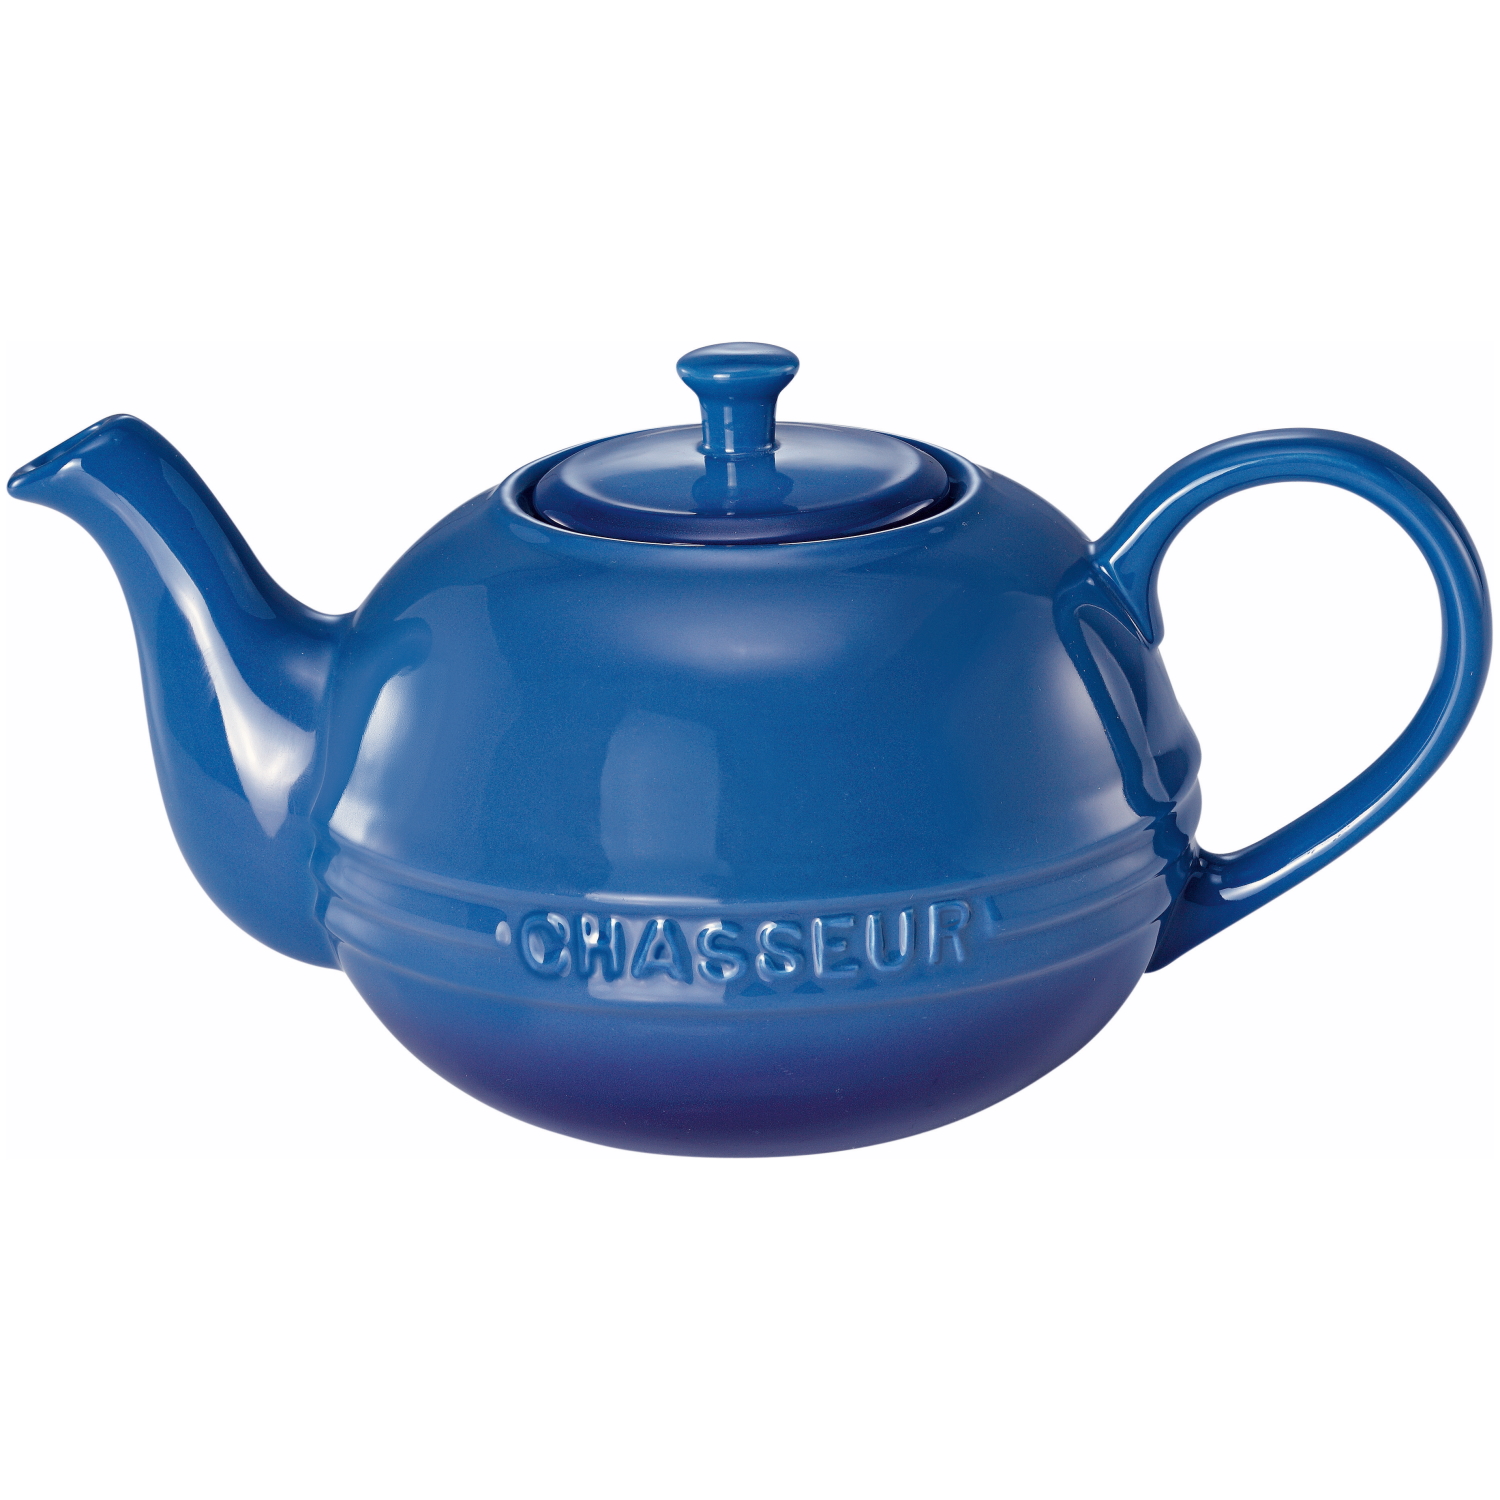 Chasseur La Cuisson Teapot 1.5L Blue